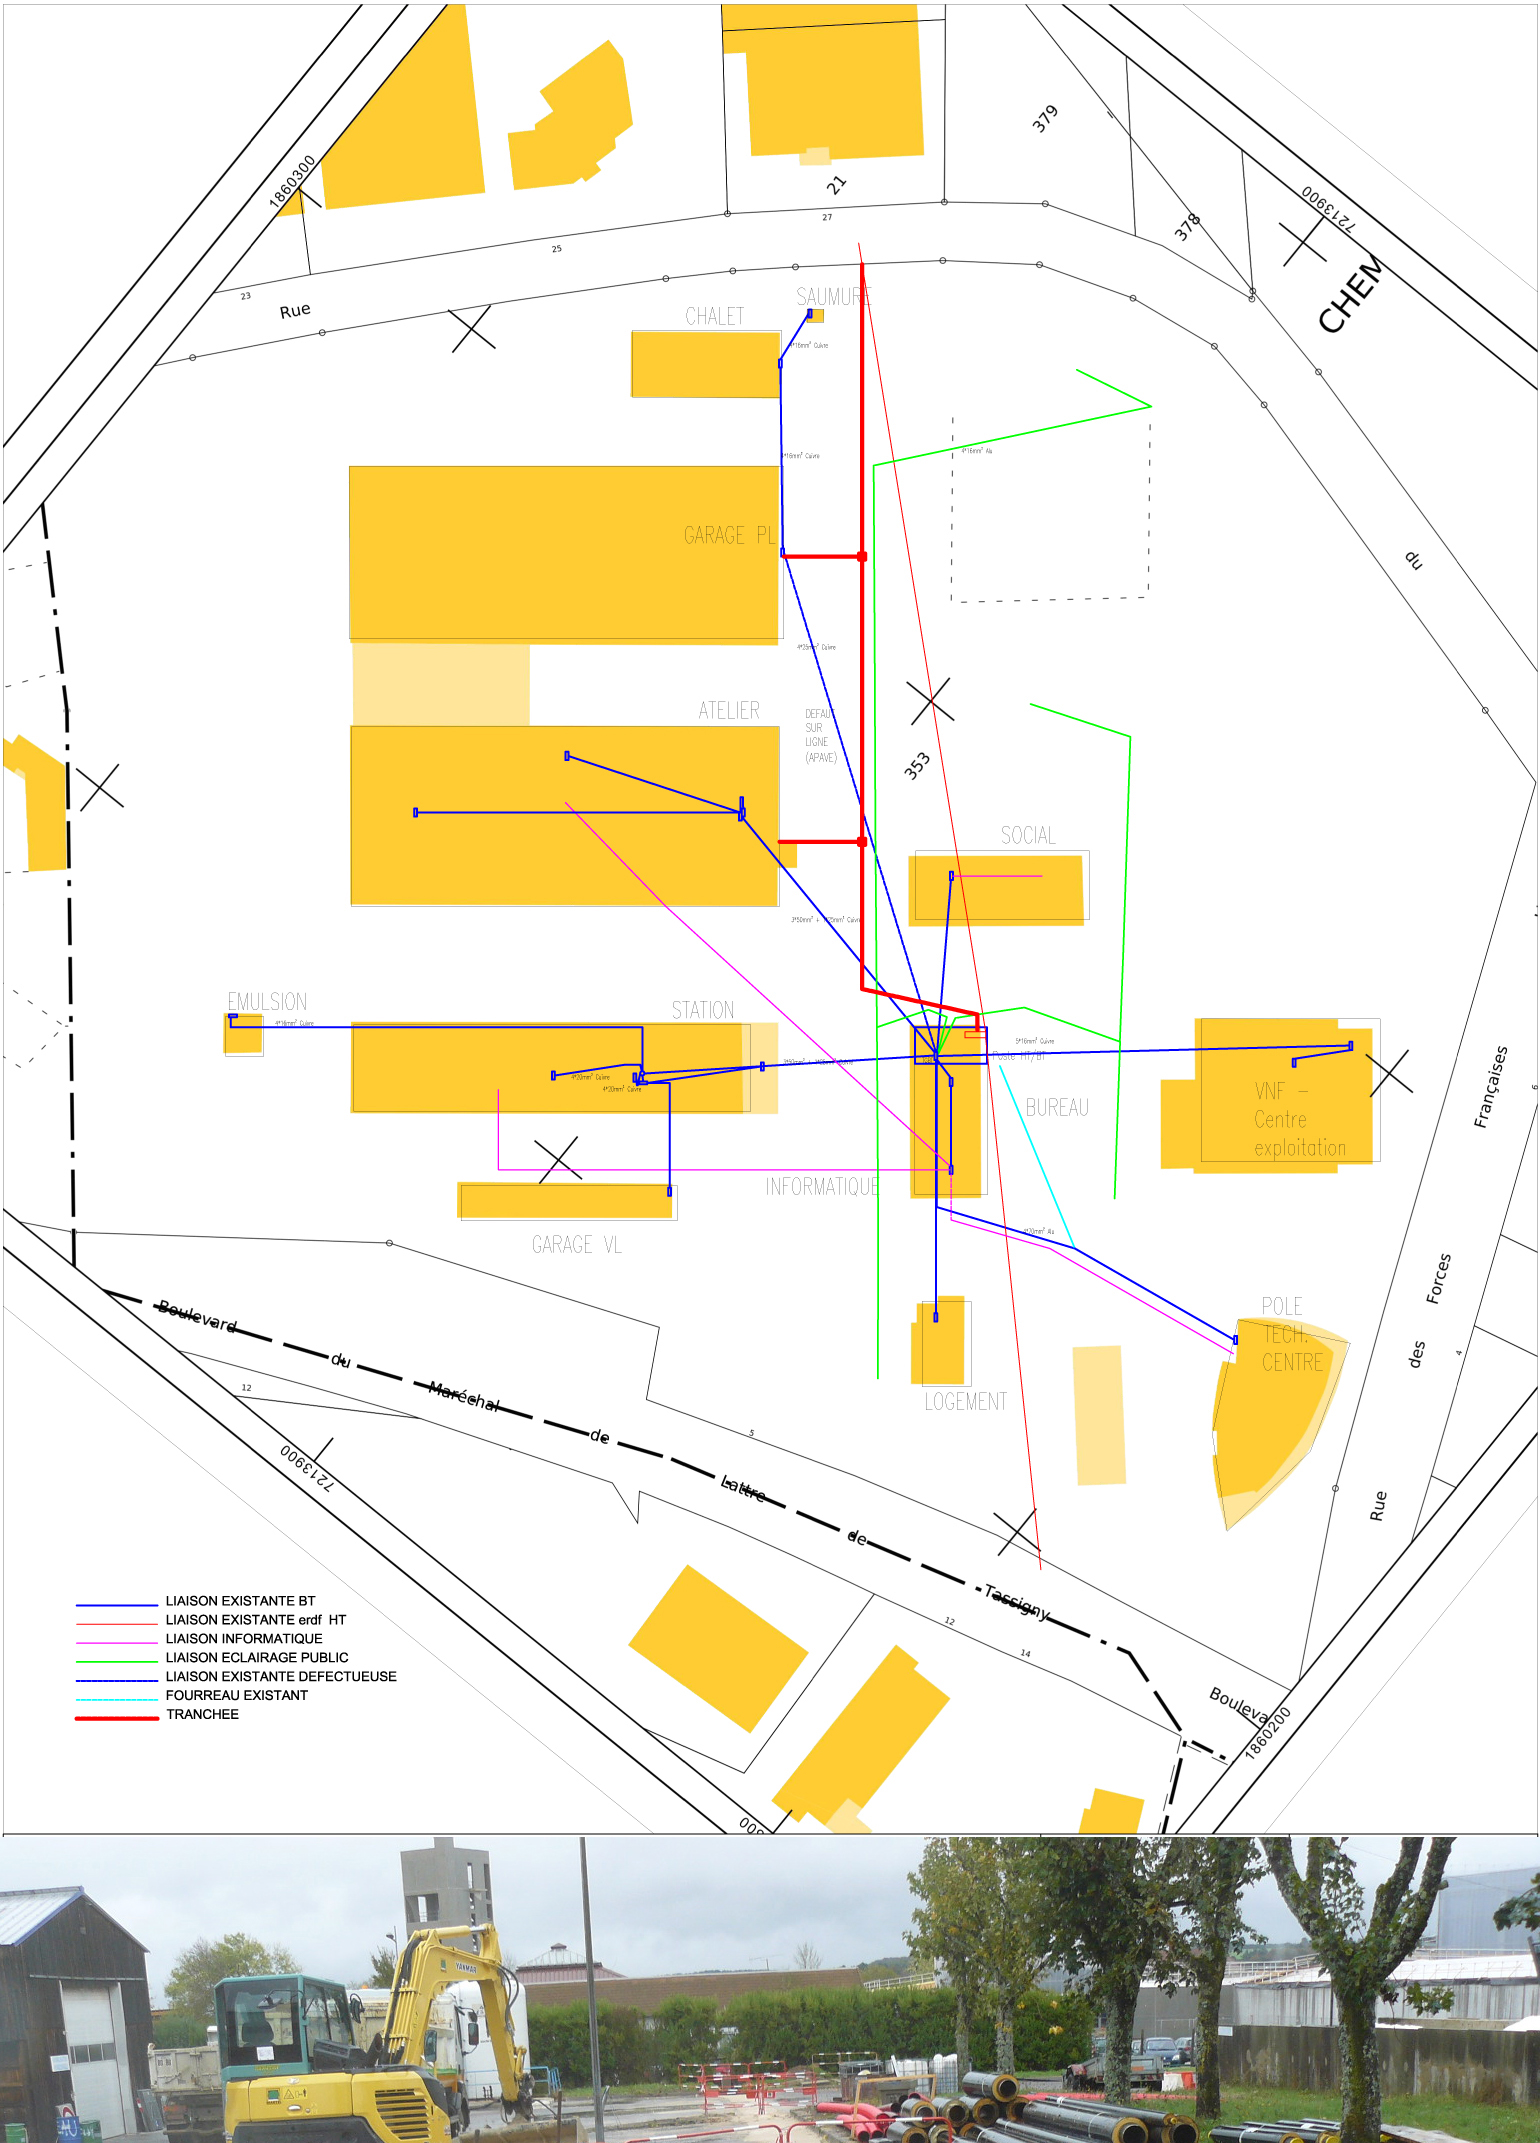 travaux de passage du tarif vert au tarif jaune, de la suppression du transformateur, et de la mise en conformité des installations électriques au Centre Technique Départemental à Chaumont (52)